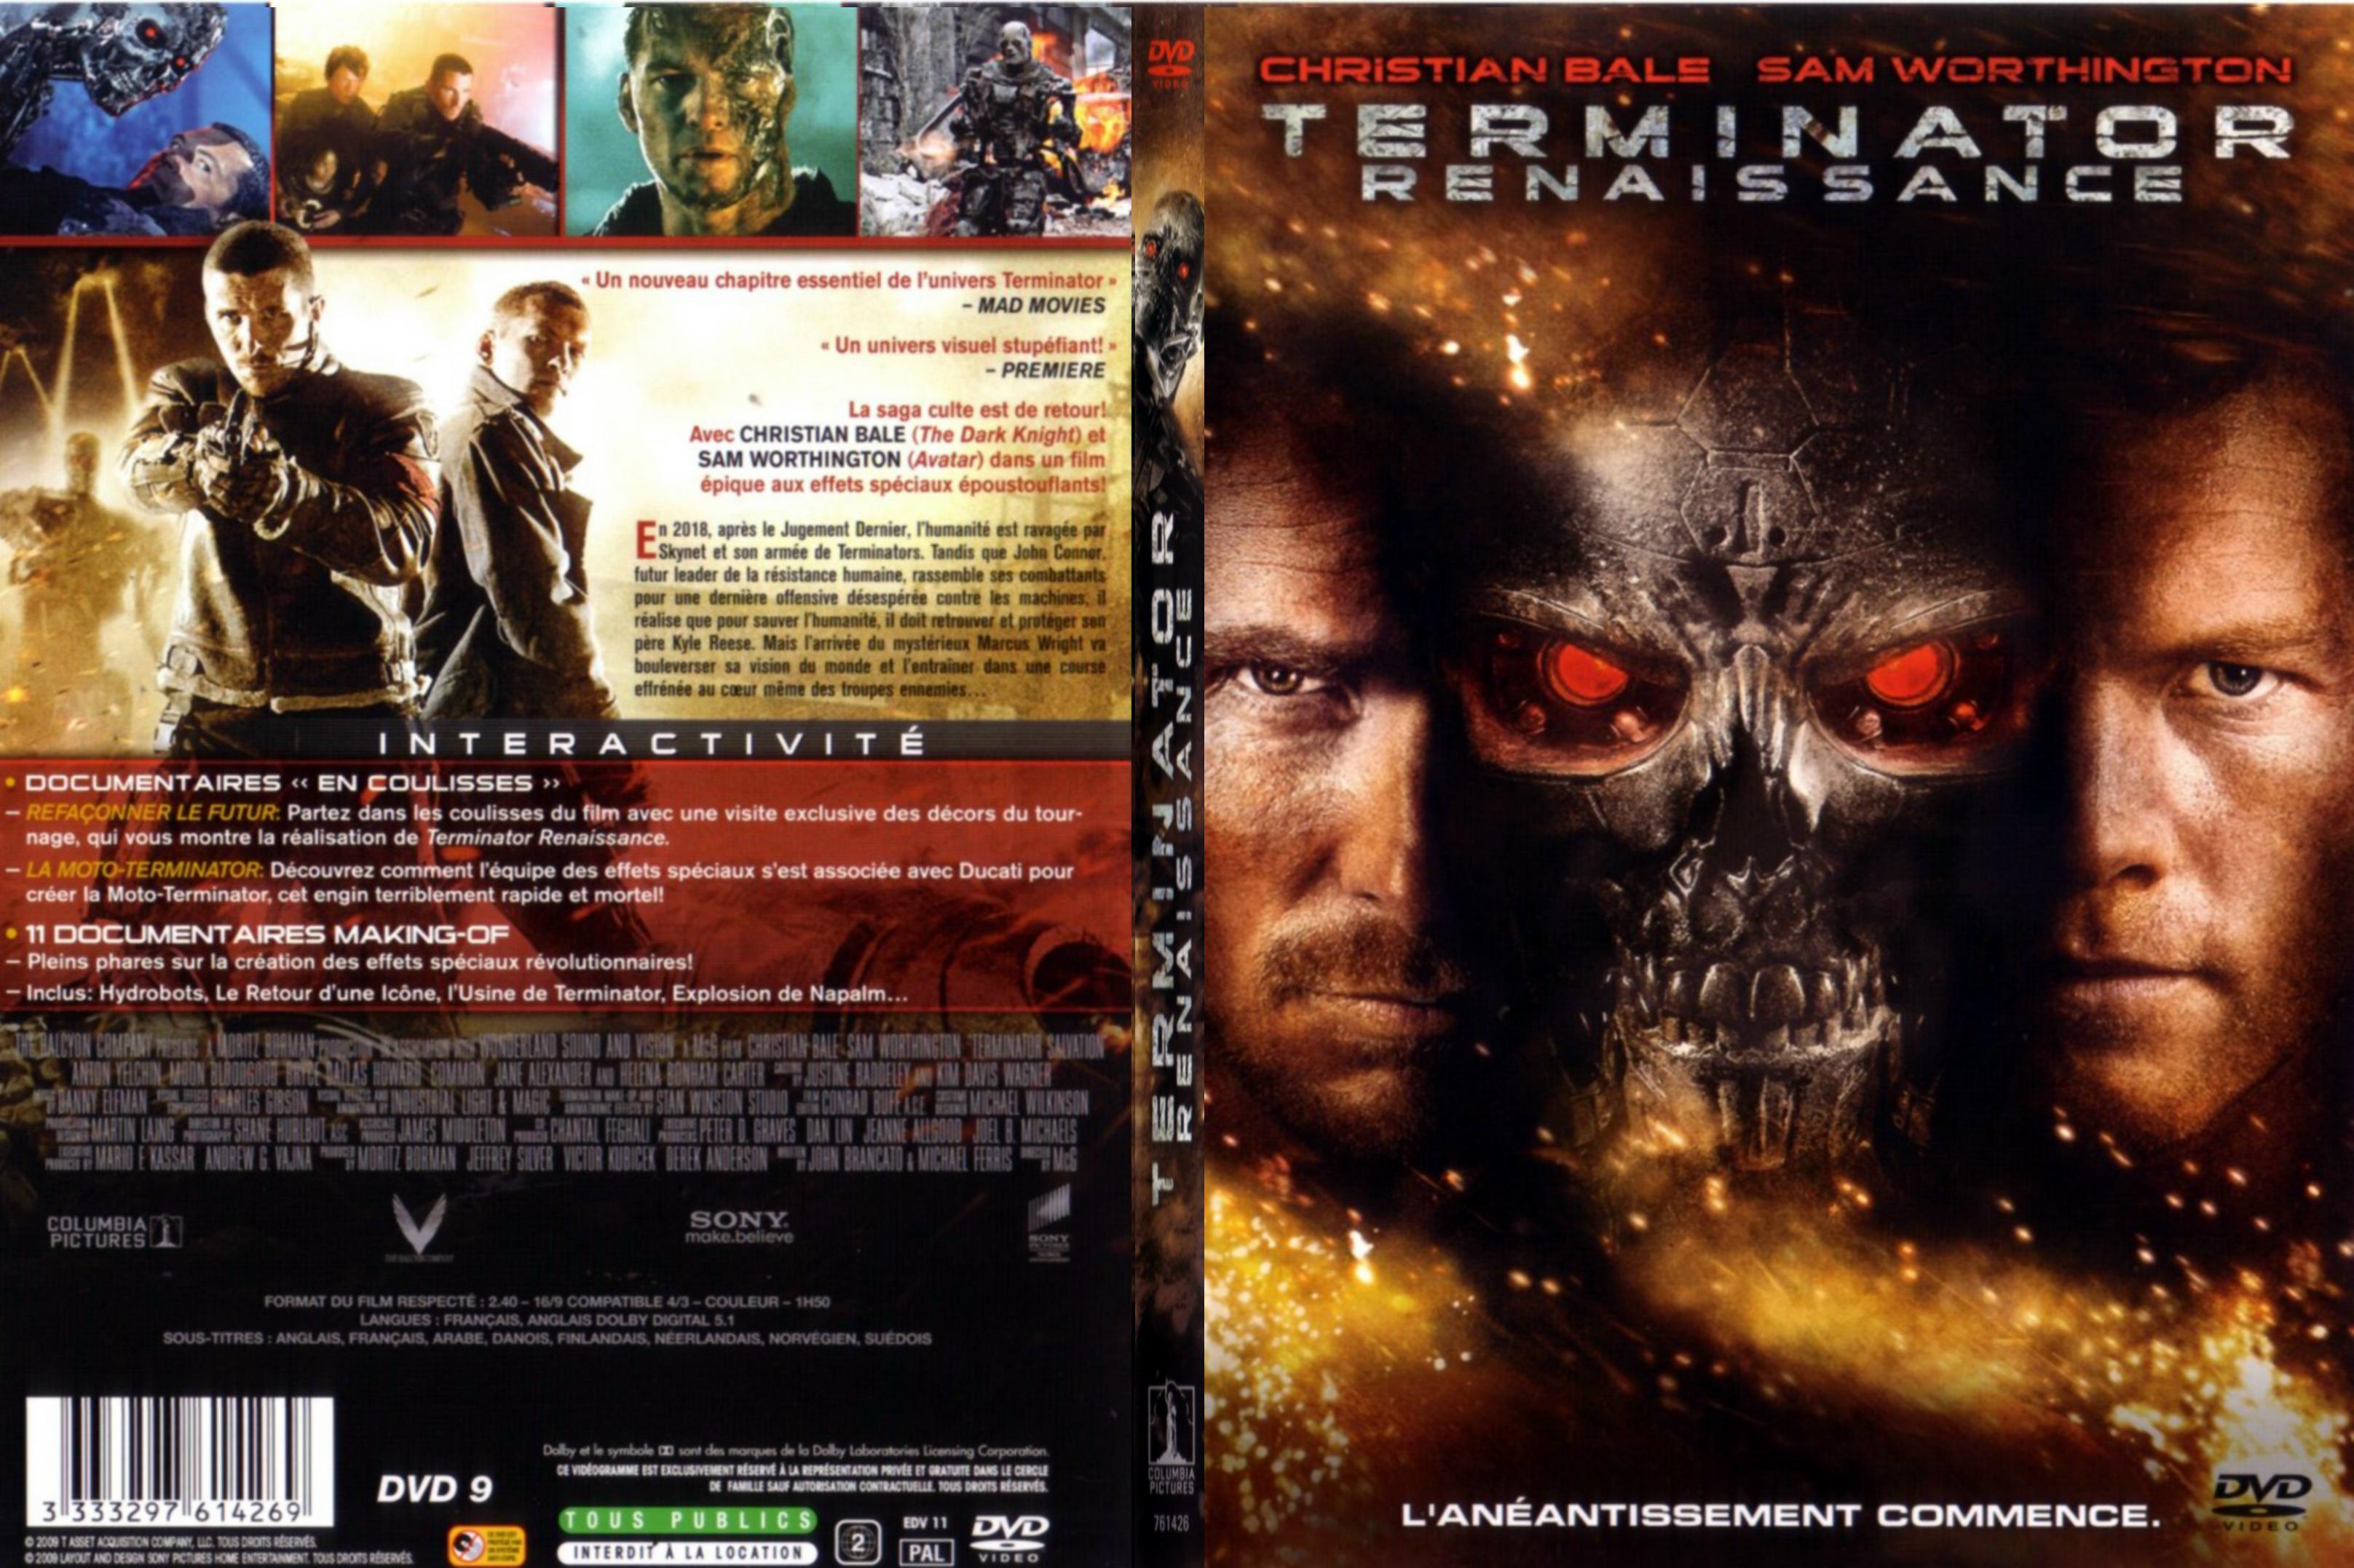 Jaquette DVD Terminator Renaissance - SLIM